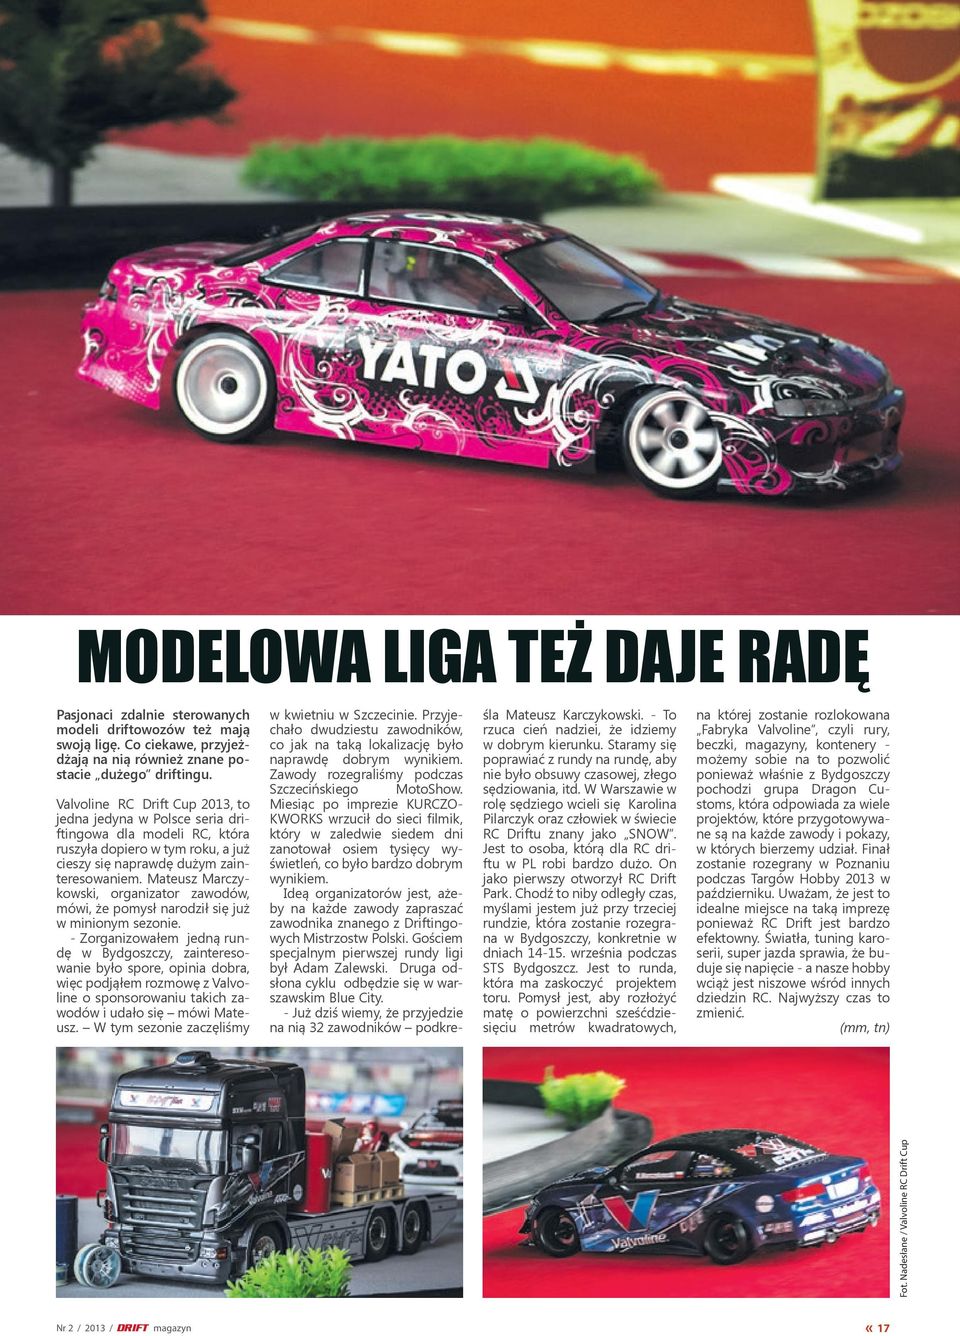 Valvoline RC Drift Cup 2013, to jedna jedyna w Polsce seria driftingowa dla modeli RC, która ruszyła dopiero w tym roku, a już cieszy się naprawdę dużym zainteresowaniem.